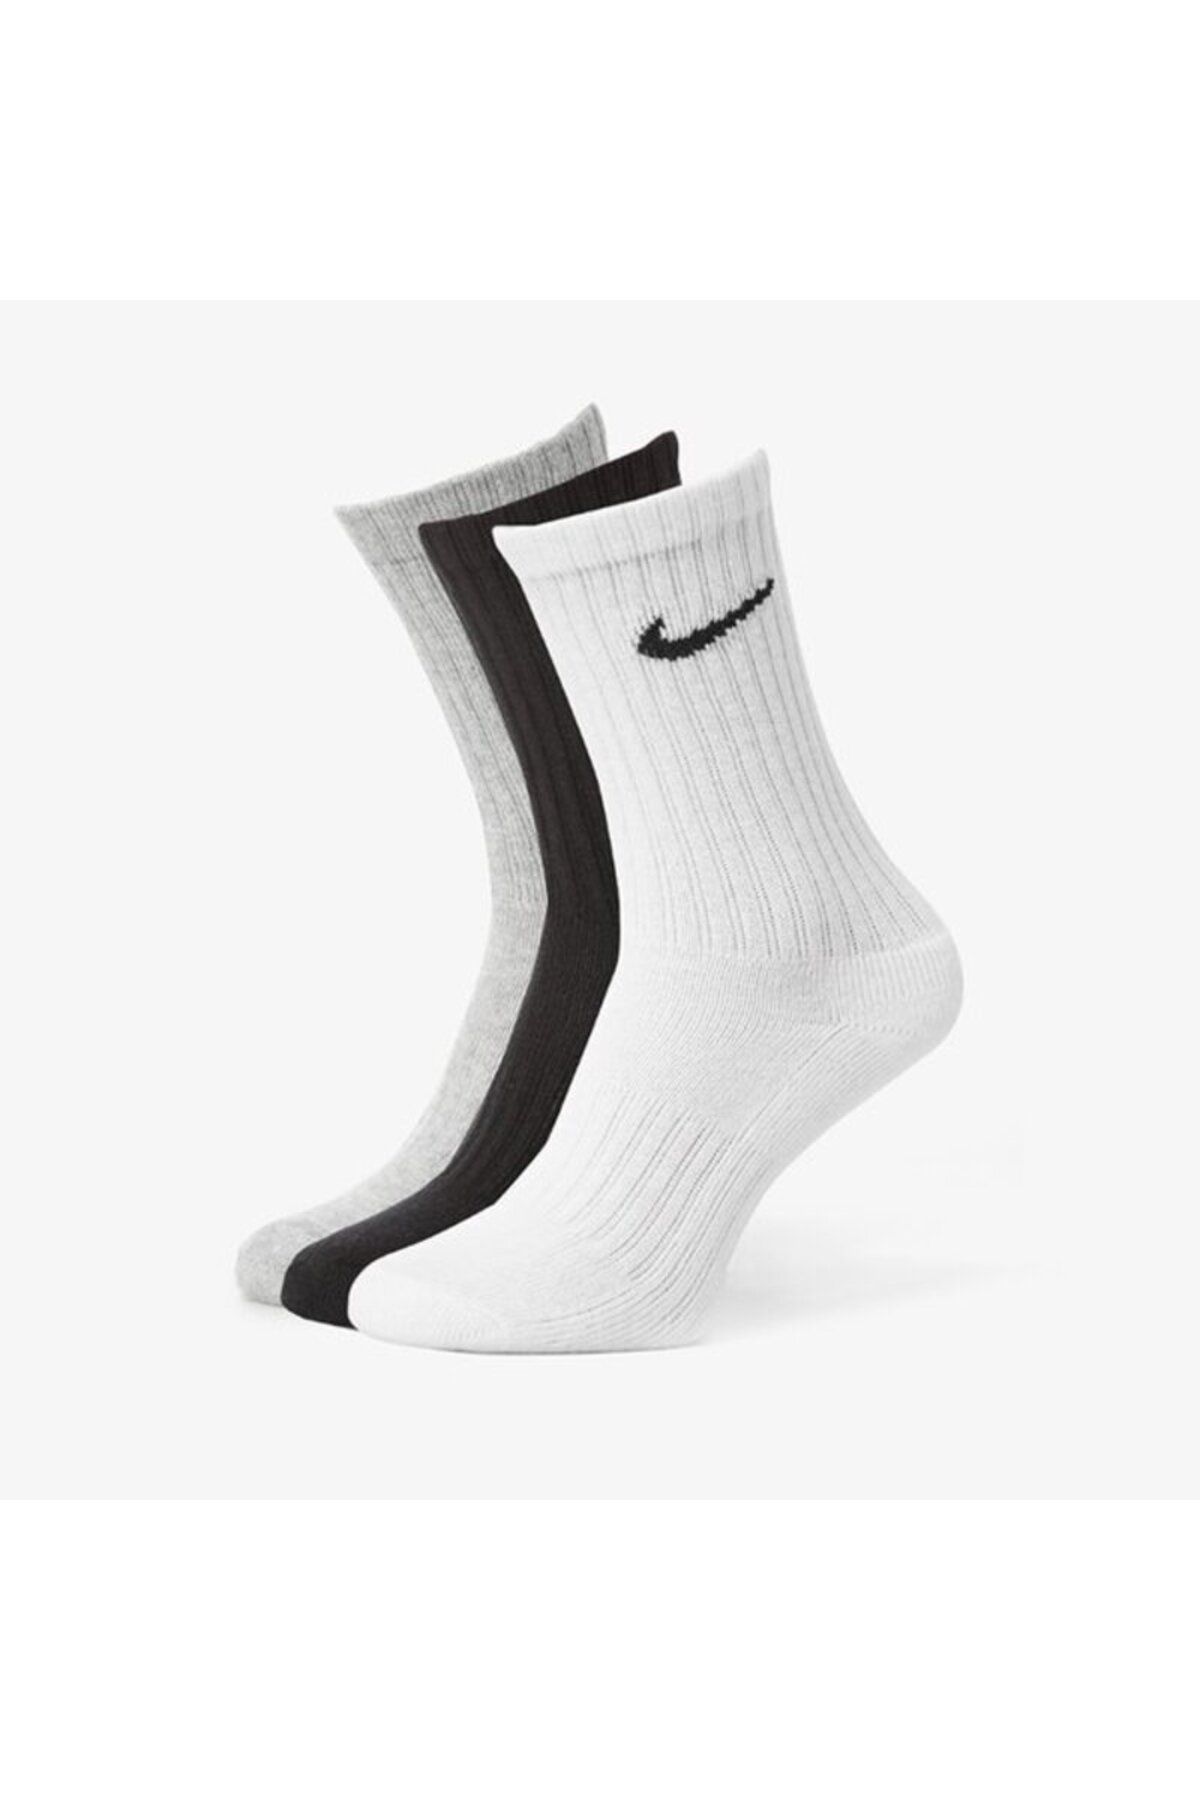 Nike Antrenman Spor Çorap Üç Çift 34-38 Numara  Siyah Beyaz Gri renk